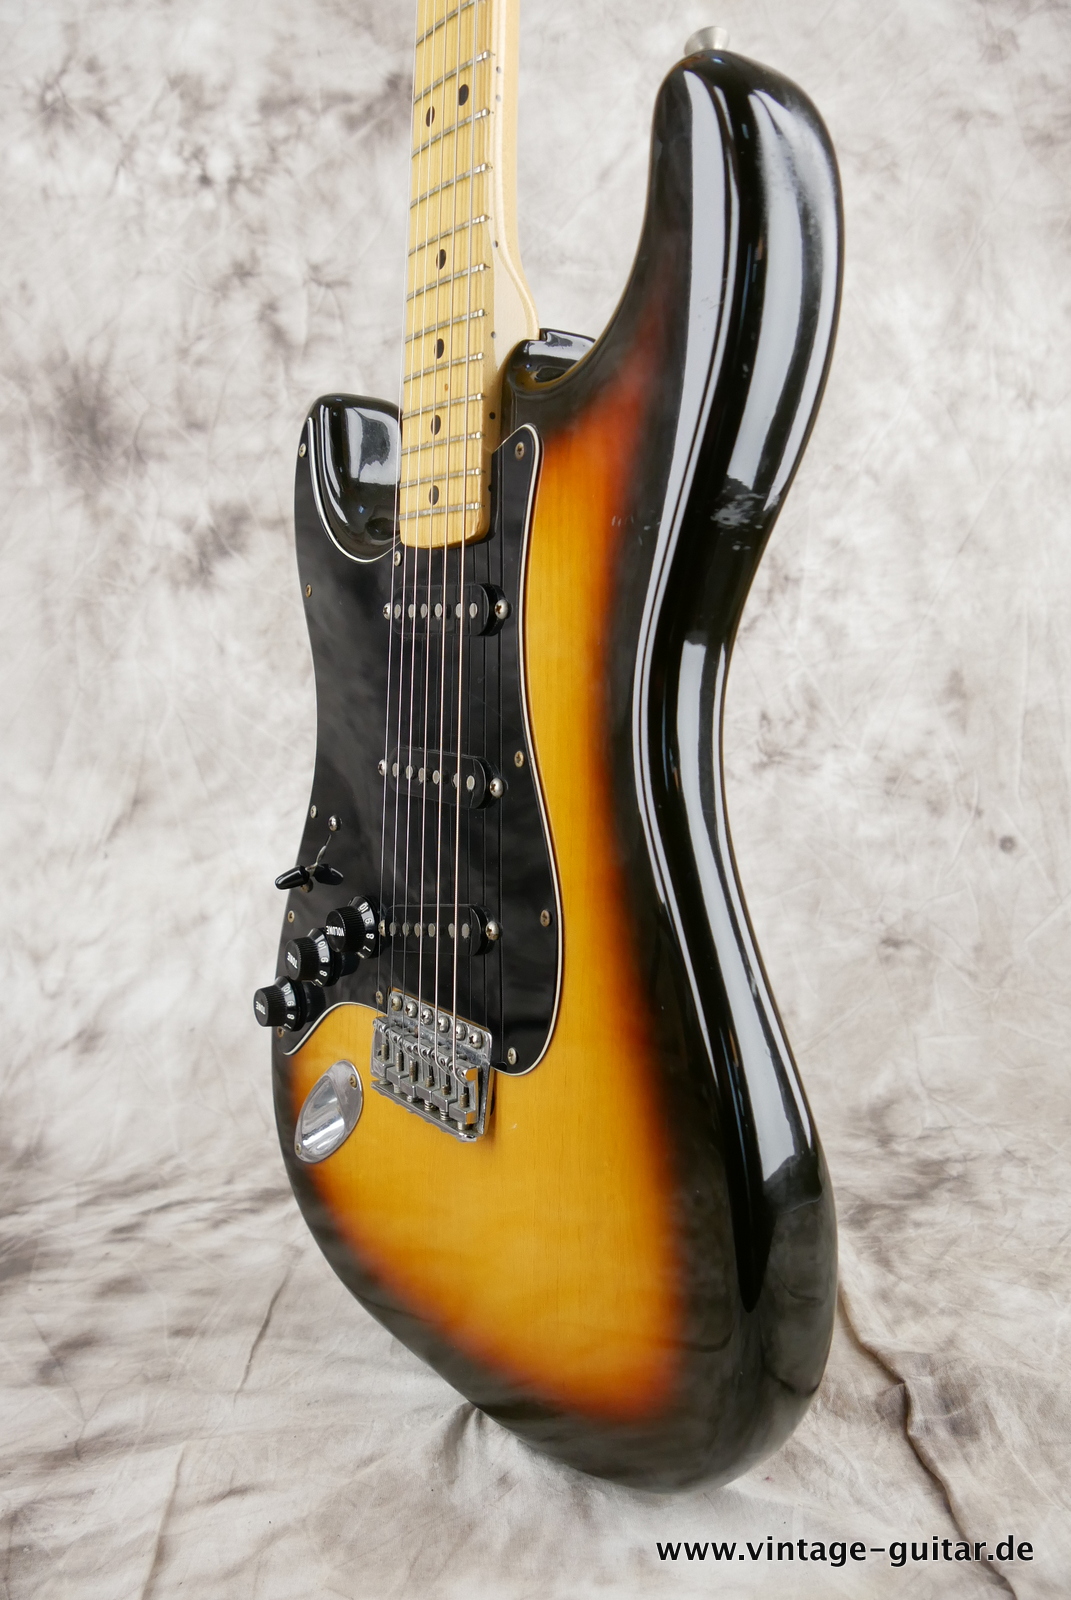 Fender_Left_Hand_Stratocaster_1980_sunburst_usa_maple_neck-010.JPG